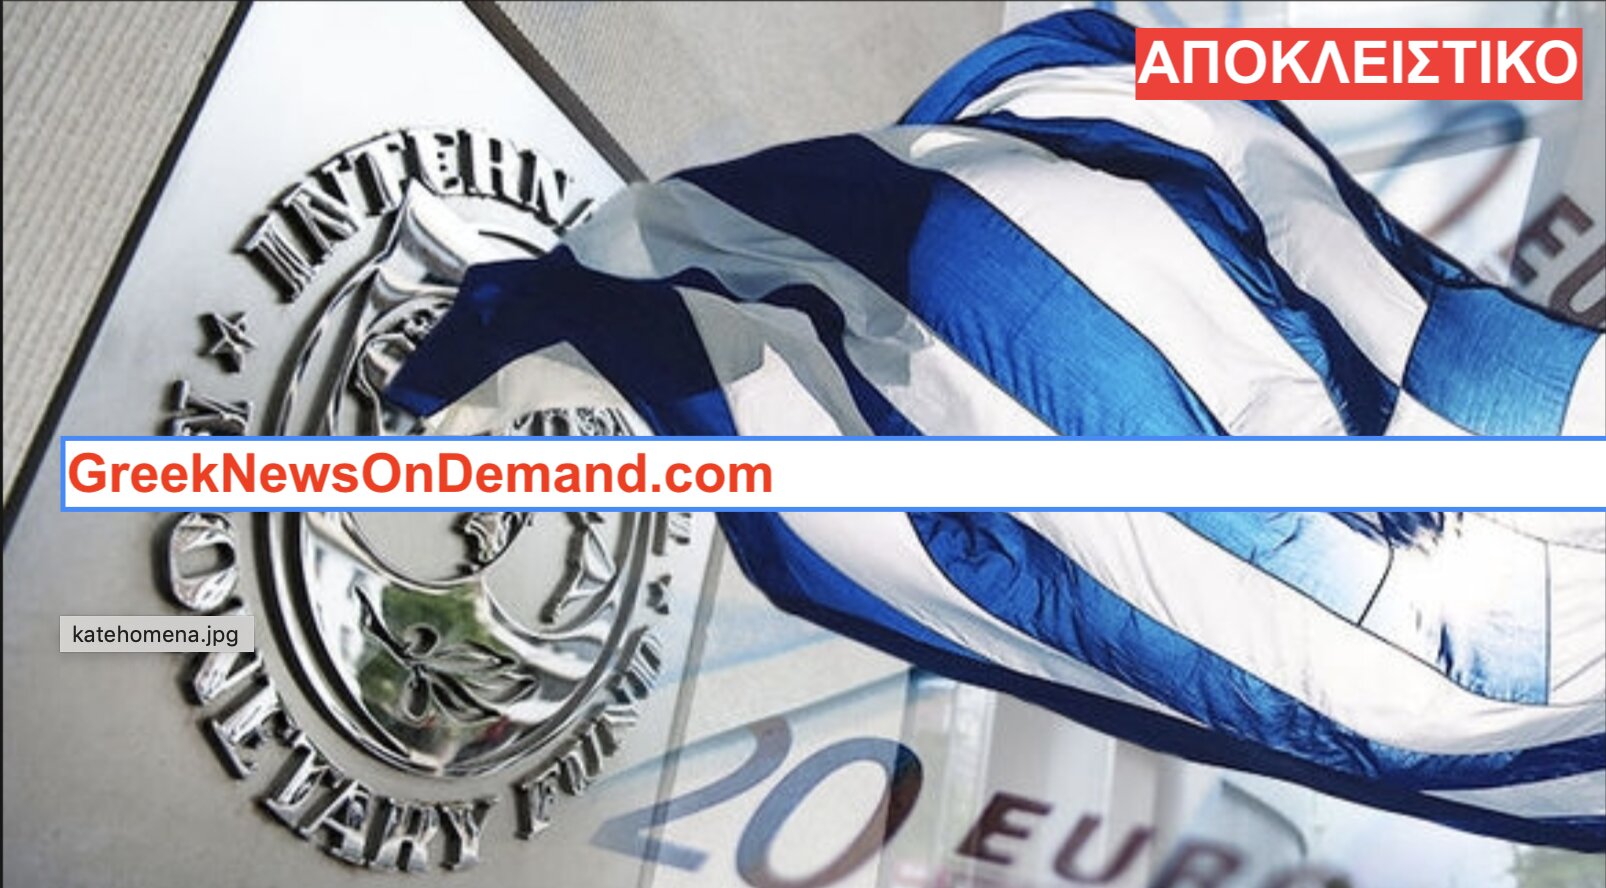 Ιδού η μεγάλη ΣΥΝΩΜΟΣΙΑ του Μνημονίου που έγινε για να σωθεί το ΔΝΤ και να καταστραφεί η Ελλάδα!!!